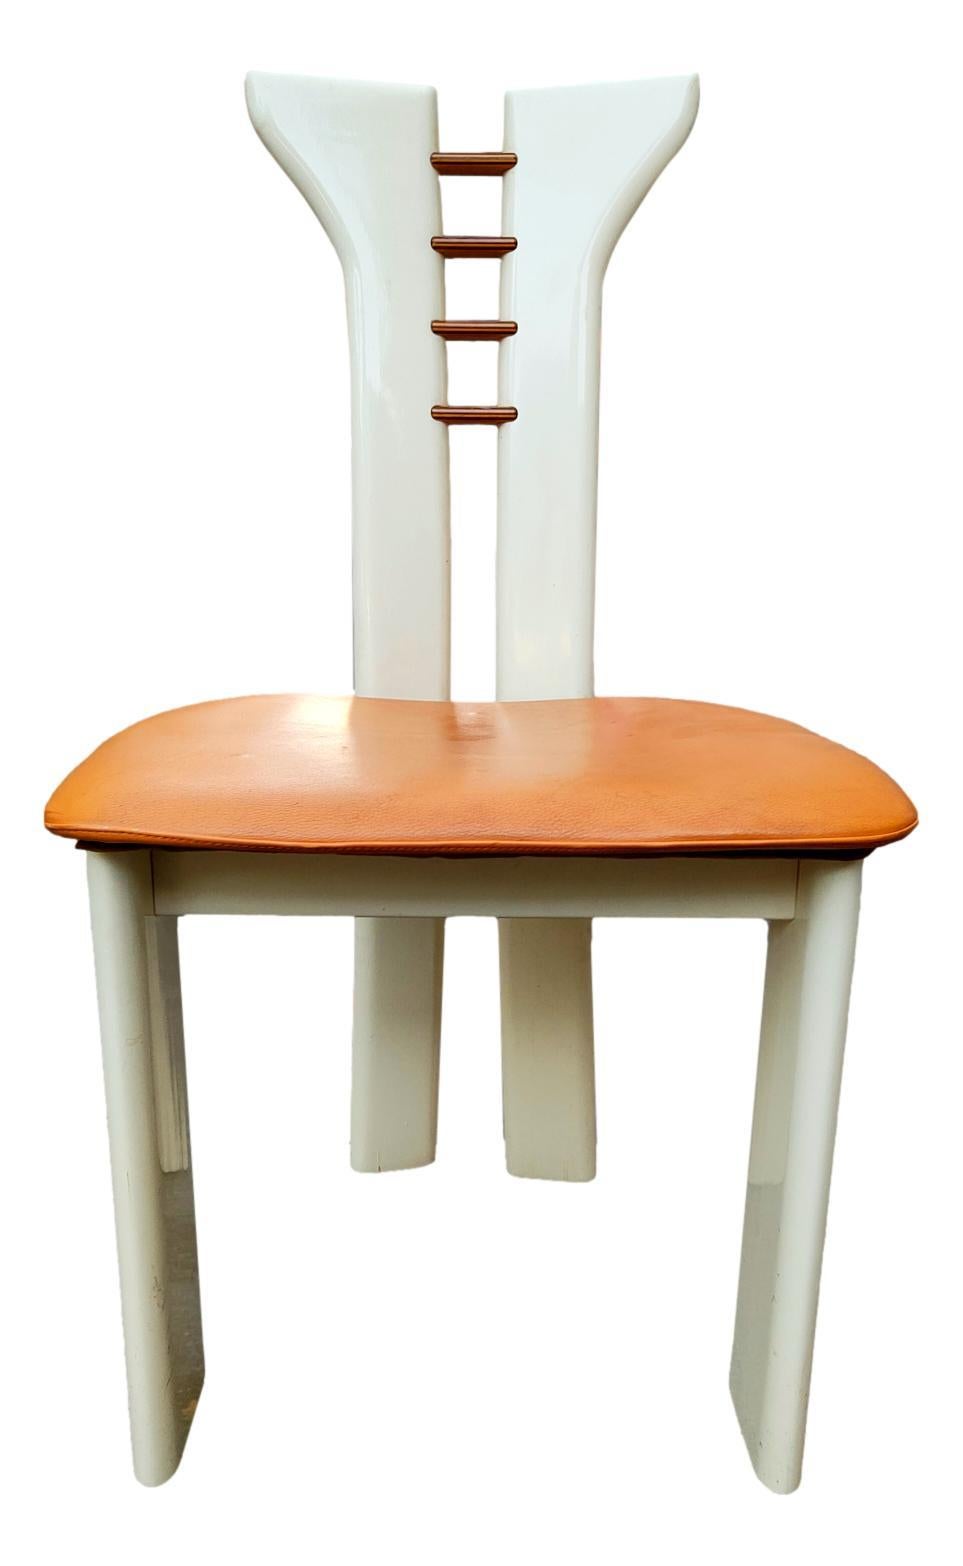 lot de quatre chaises originales des années 70, design pierre cardin pour Roche Bobois
en bois avec les décorations classiques de Cardin sur le dossier, siège en cuir d'origine, couleur blanc/milk
Ils mesurent 89 cm de hauteur, 48 cm de